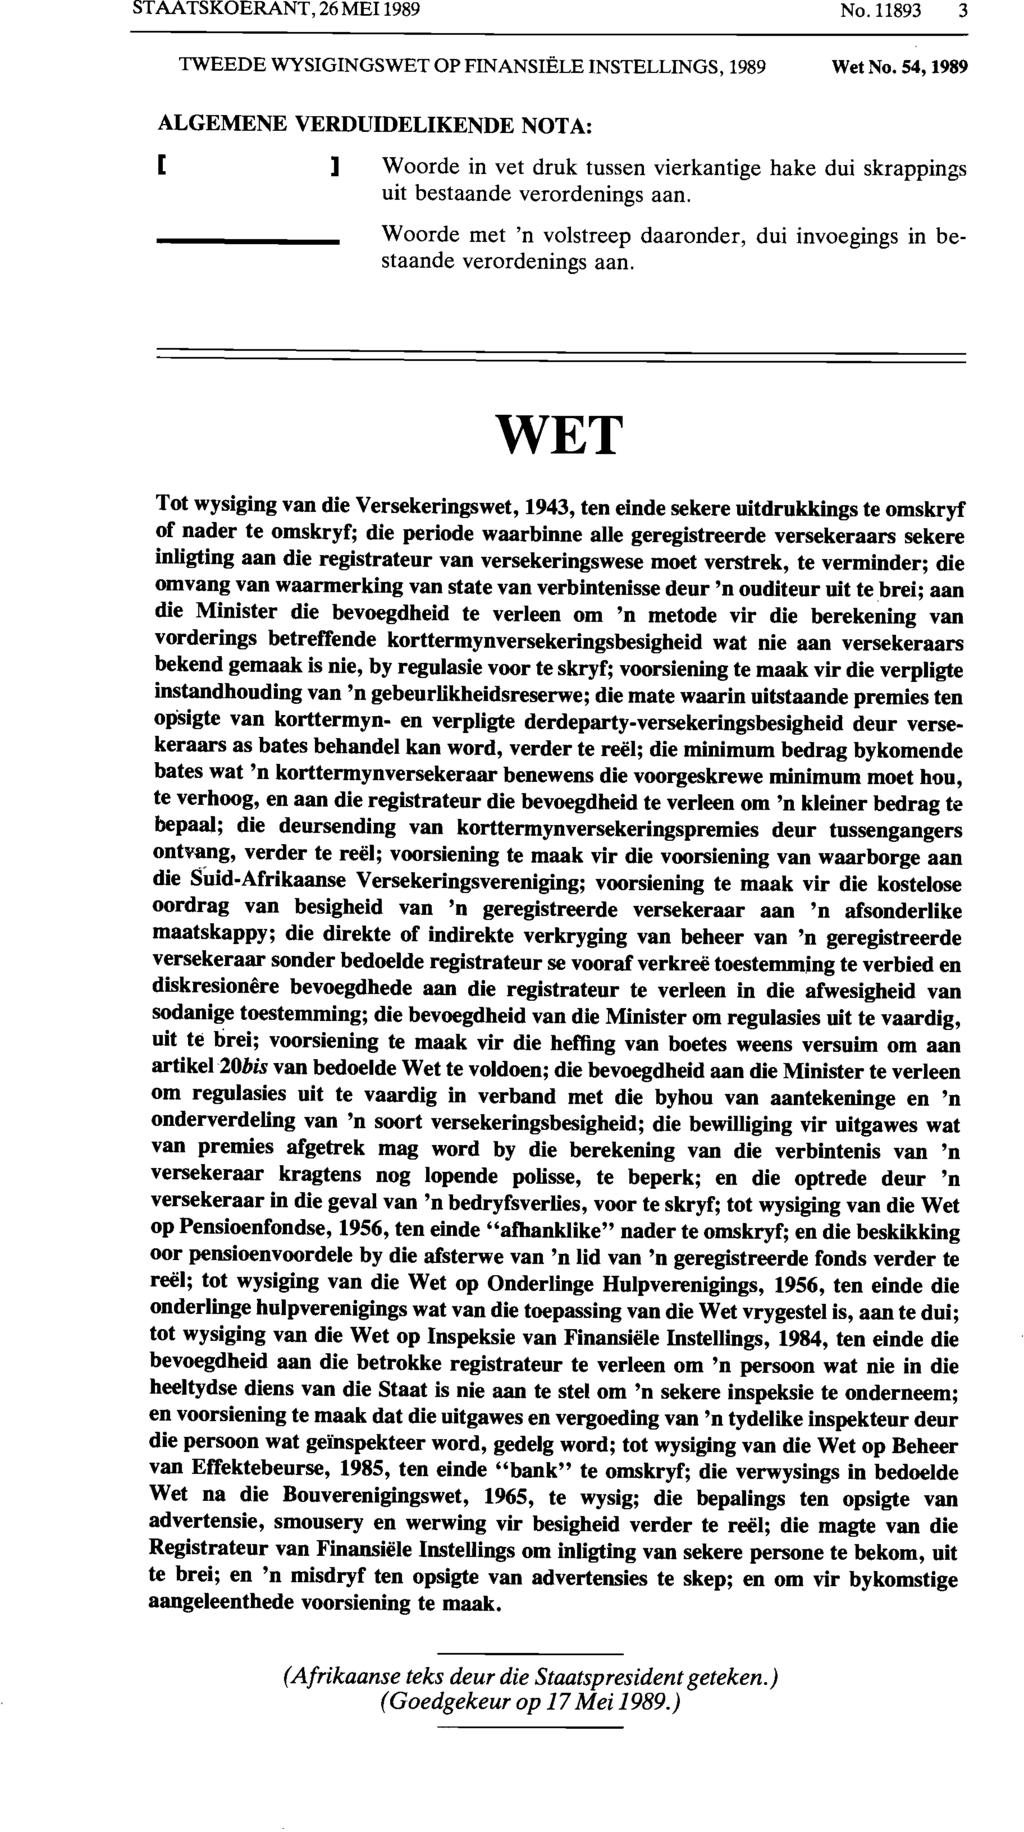 STAATSKOERANT, 26 MEl 1989 No, 11893 3 TWEEDE WYSIGINGSWET OP FINANSIELE INSTELLINGS, 1989 Wet No.